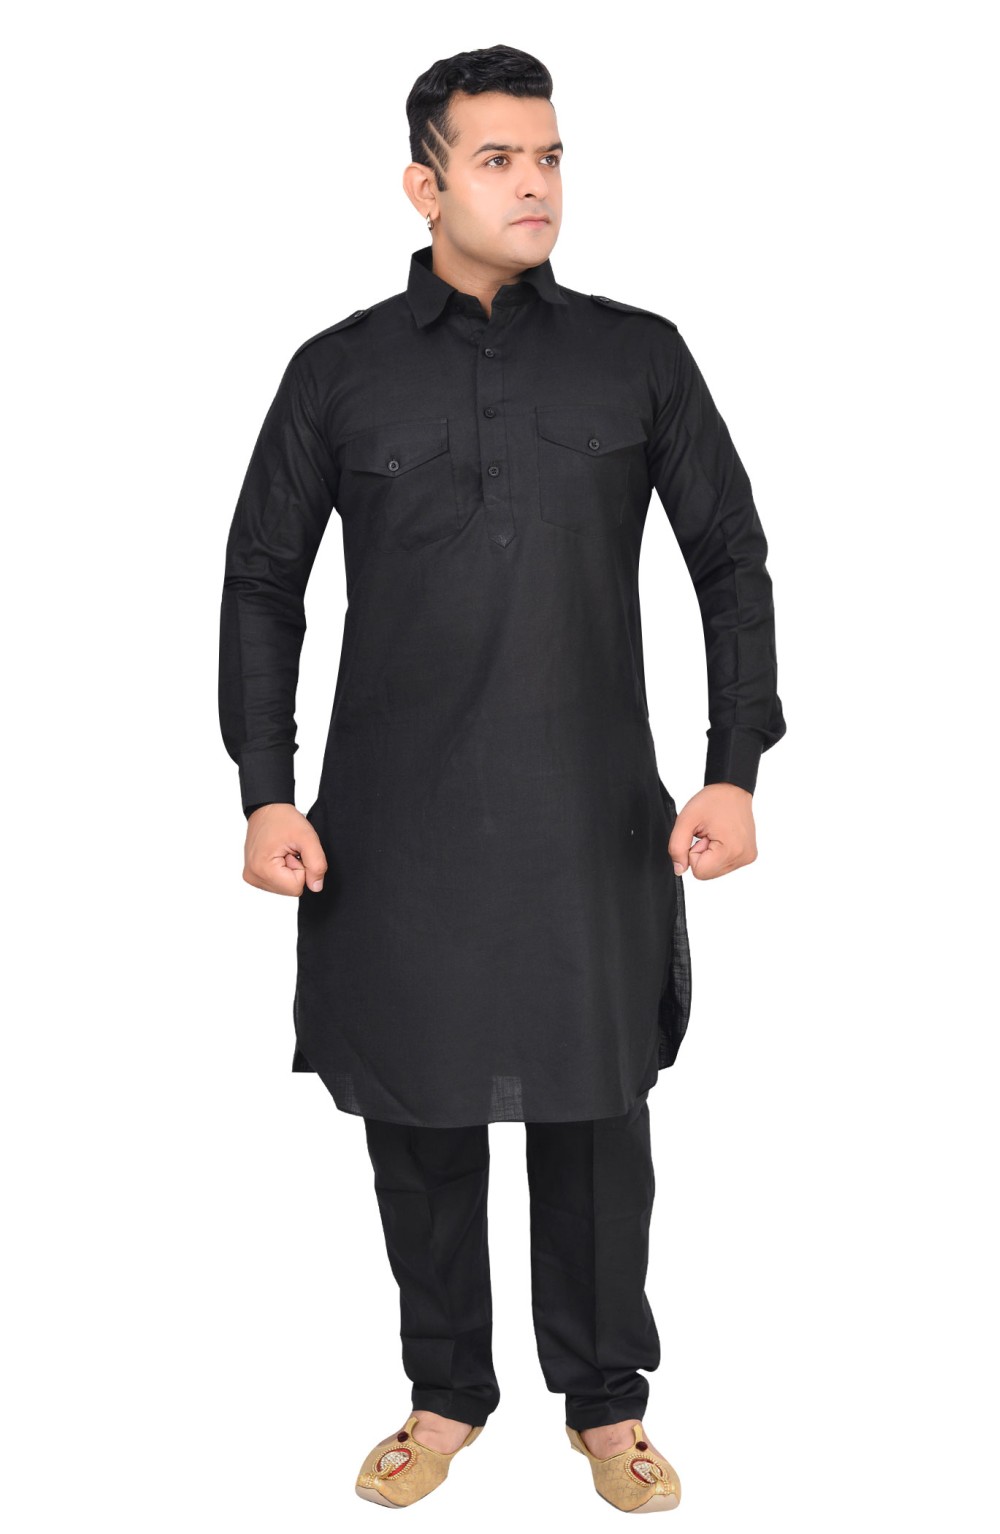 Cotton Casual Wear Men's half sleeve punjabi Kurta Pajama, Machine wash,  Size: 40 at Rs 1850/piece in Jaipur